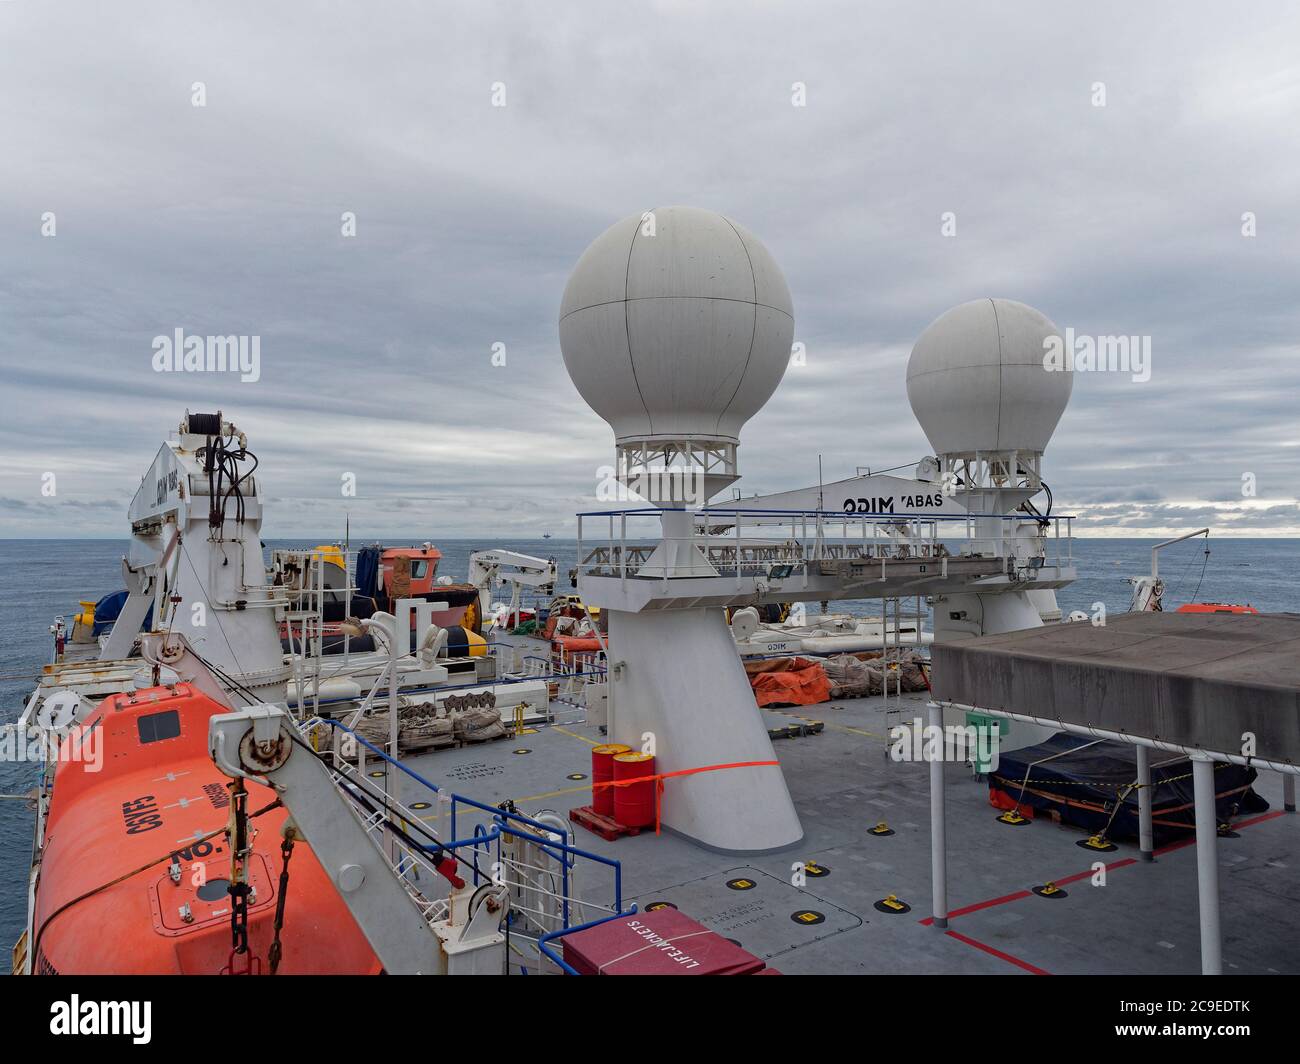 Das Top Deck eines seismischen Schiffes auf Operationen in der Nordsee, mit seinem überdachten Rettungsboot, Krane und seismische Ausrüstung alle gebunden. Stockfoto